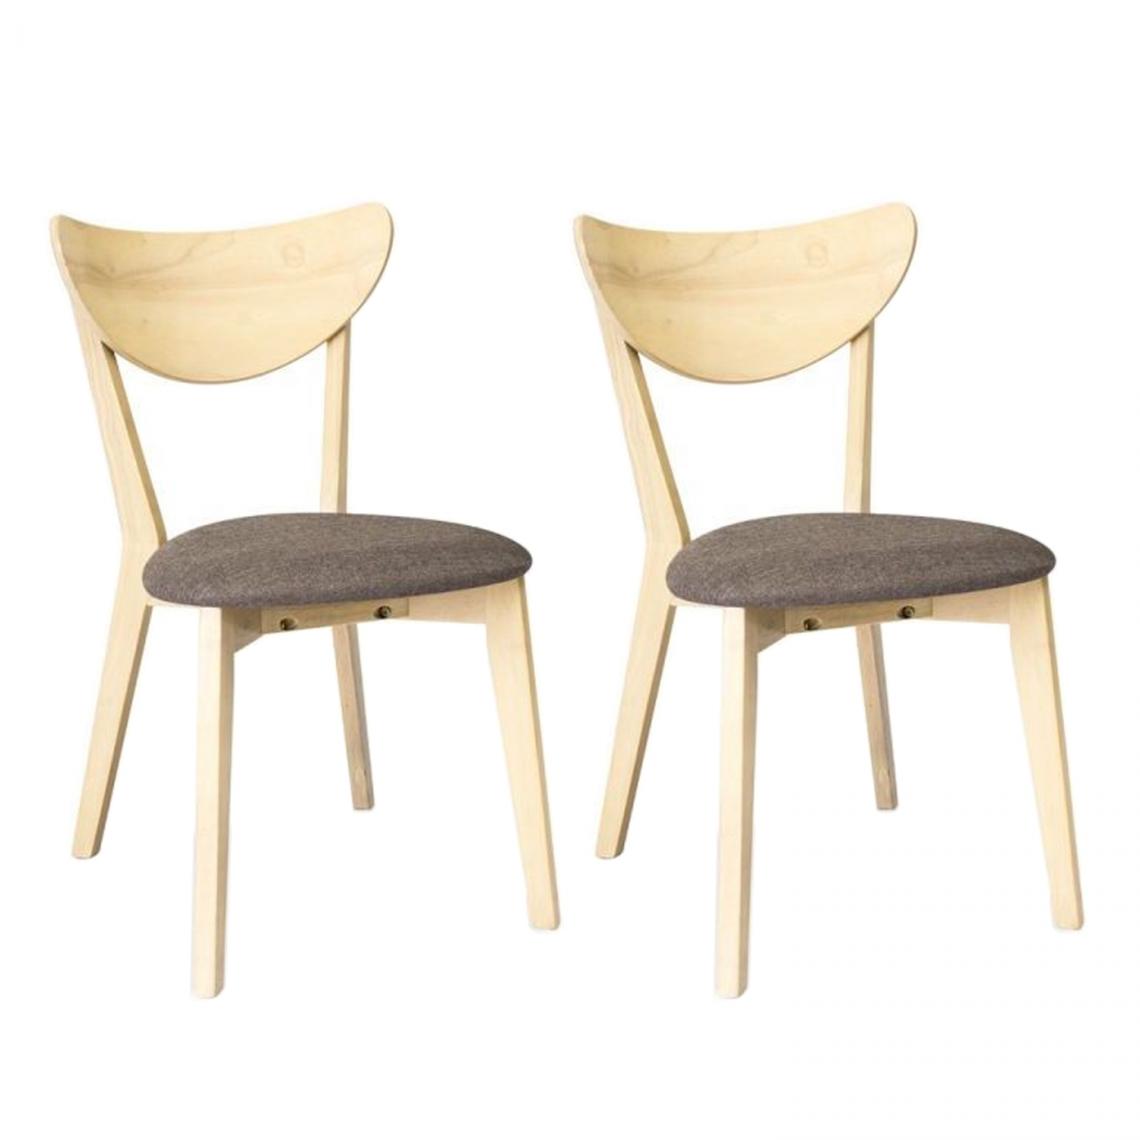 Hucoco - EDIA - Lot de 2 chaises en bois style scandinave salle à manger - 79x45x44 cm - MDF + bois massif - Gris - Chaises